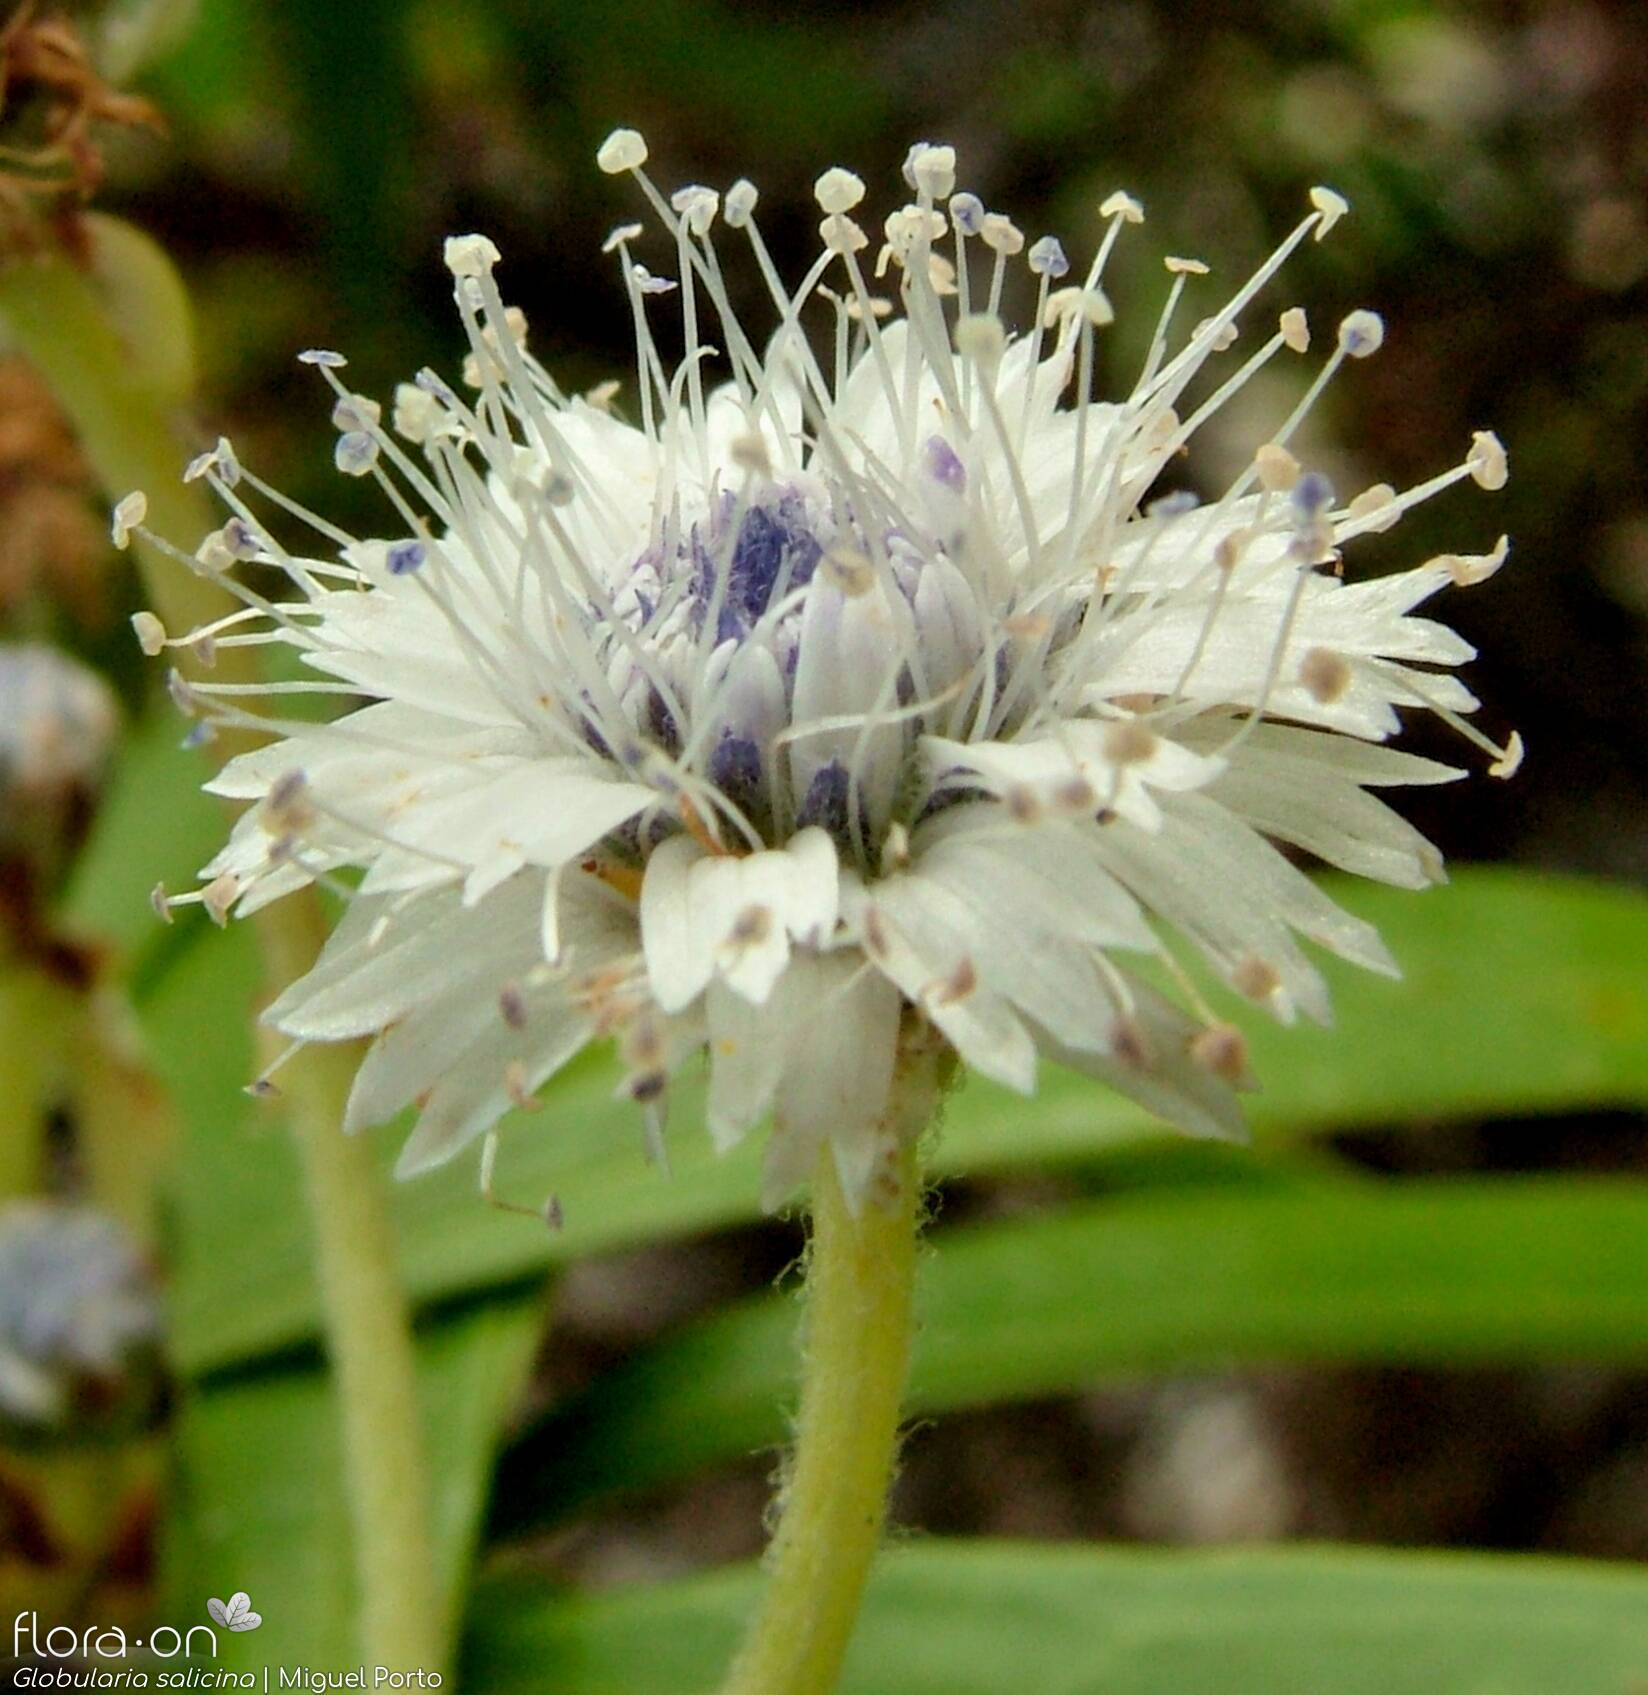 Globularia salicina - Flor (close-up) | Miguel Porto; CC BY-NC 4.0